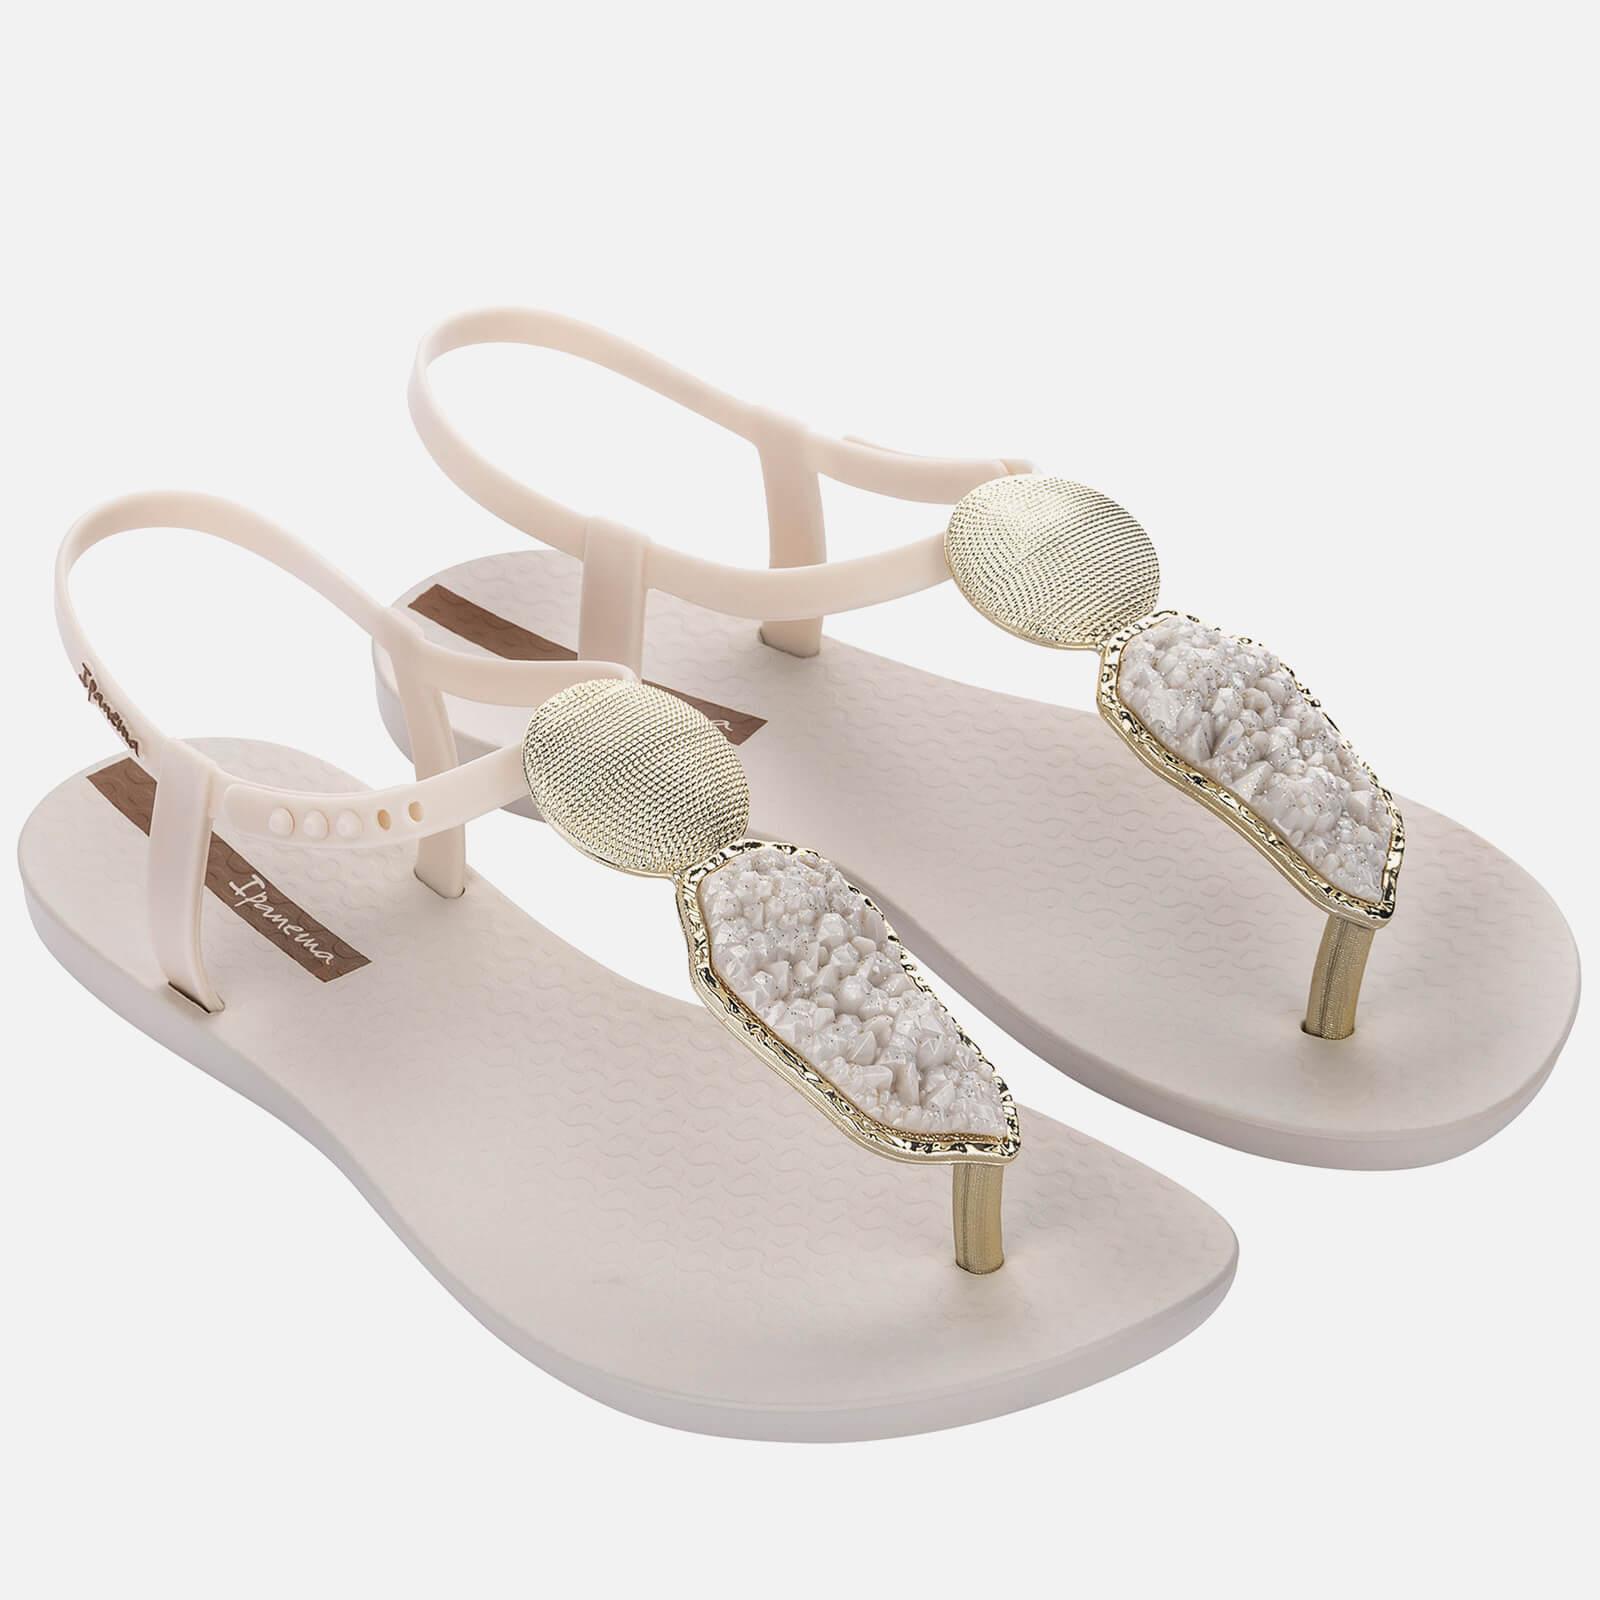 Knop verhoging communicatie Ipanema Elegant Crystal Sandals in White | Lyst